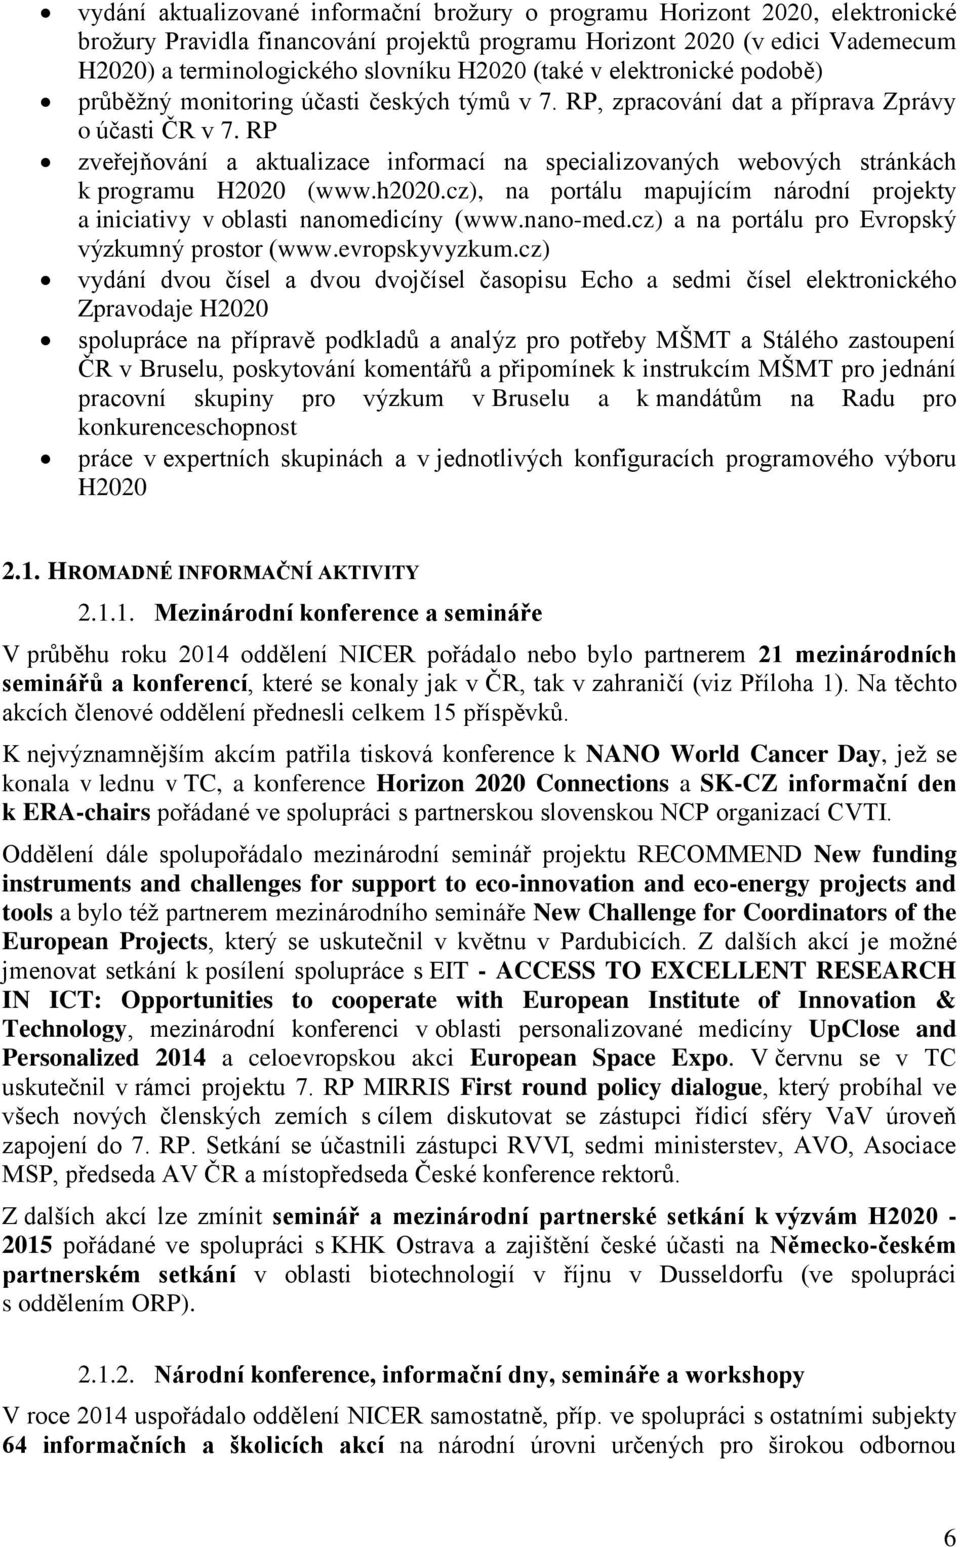 RP zveřejňování a aktualizace informací na specializovaných webových stránkách k programu H2020 (www.h2020.cz), na portálu mapujícím národní projekty a iniciativy v oblasti nanomedicíny (www.nano-med.